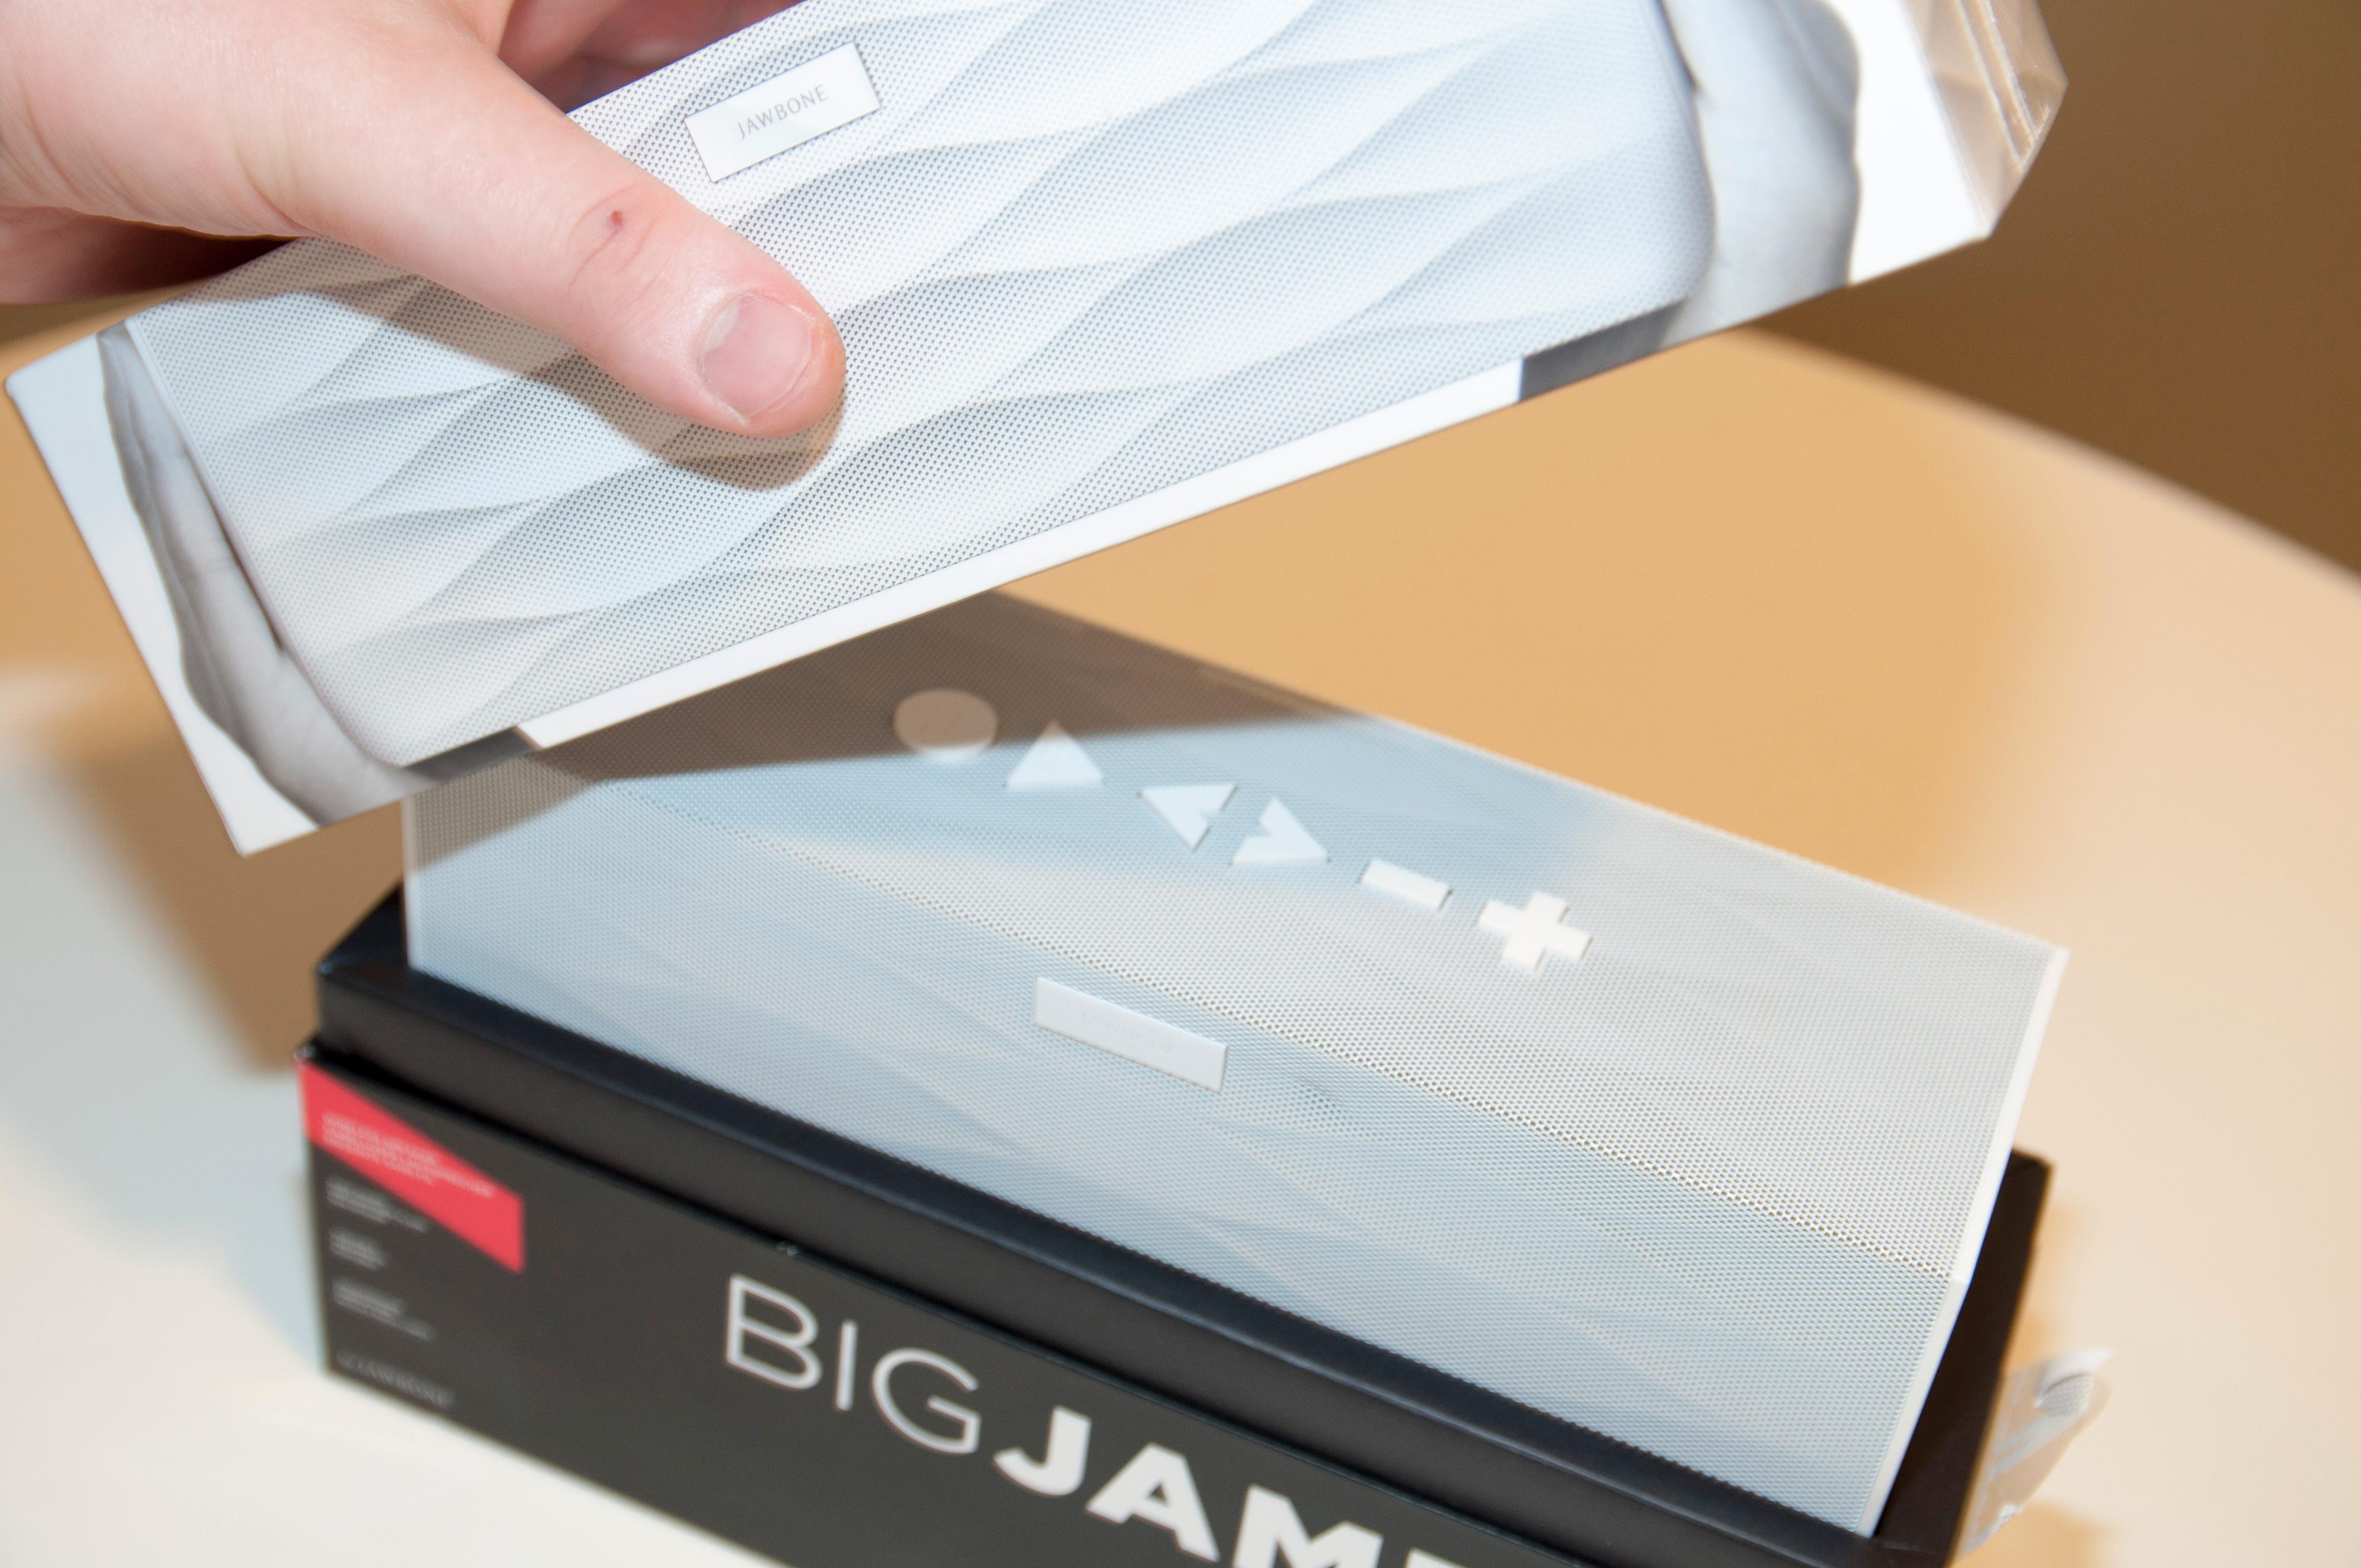 Det merkes at Jambox BIG er en designhøyttaler alt fra du åpner esken.Foto: Finn Jarle Kvalheim, Amobil.no